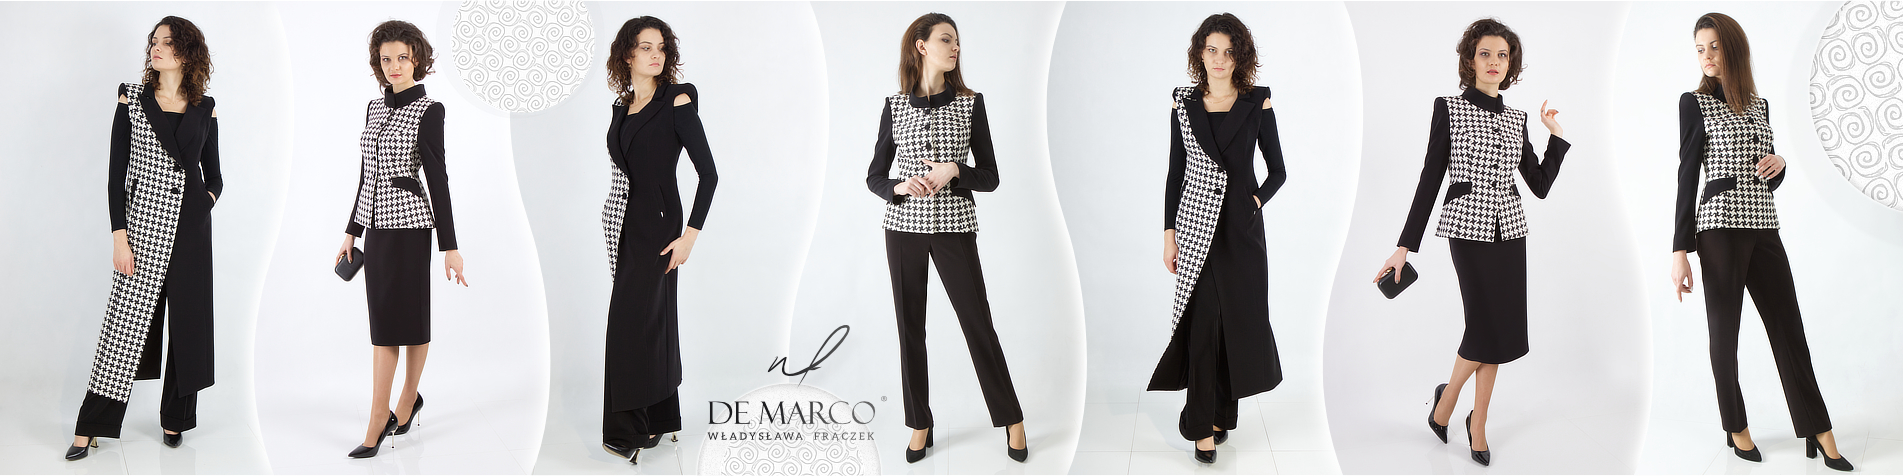 Najmodniejsza wizytowa odzież damska De Marco płaszcze, garnitury damski, garsonki i kostiumy szyte na miarę u projektanta ubrań Agaty Dudy. 